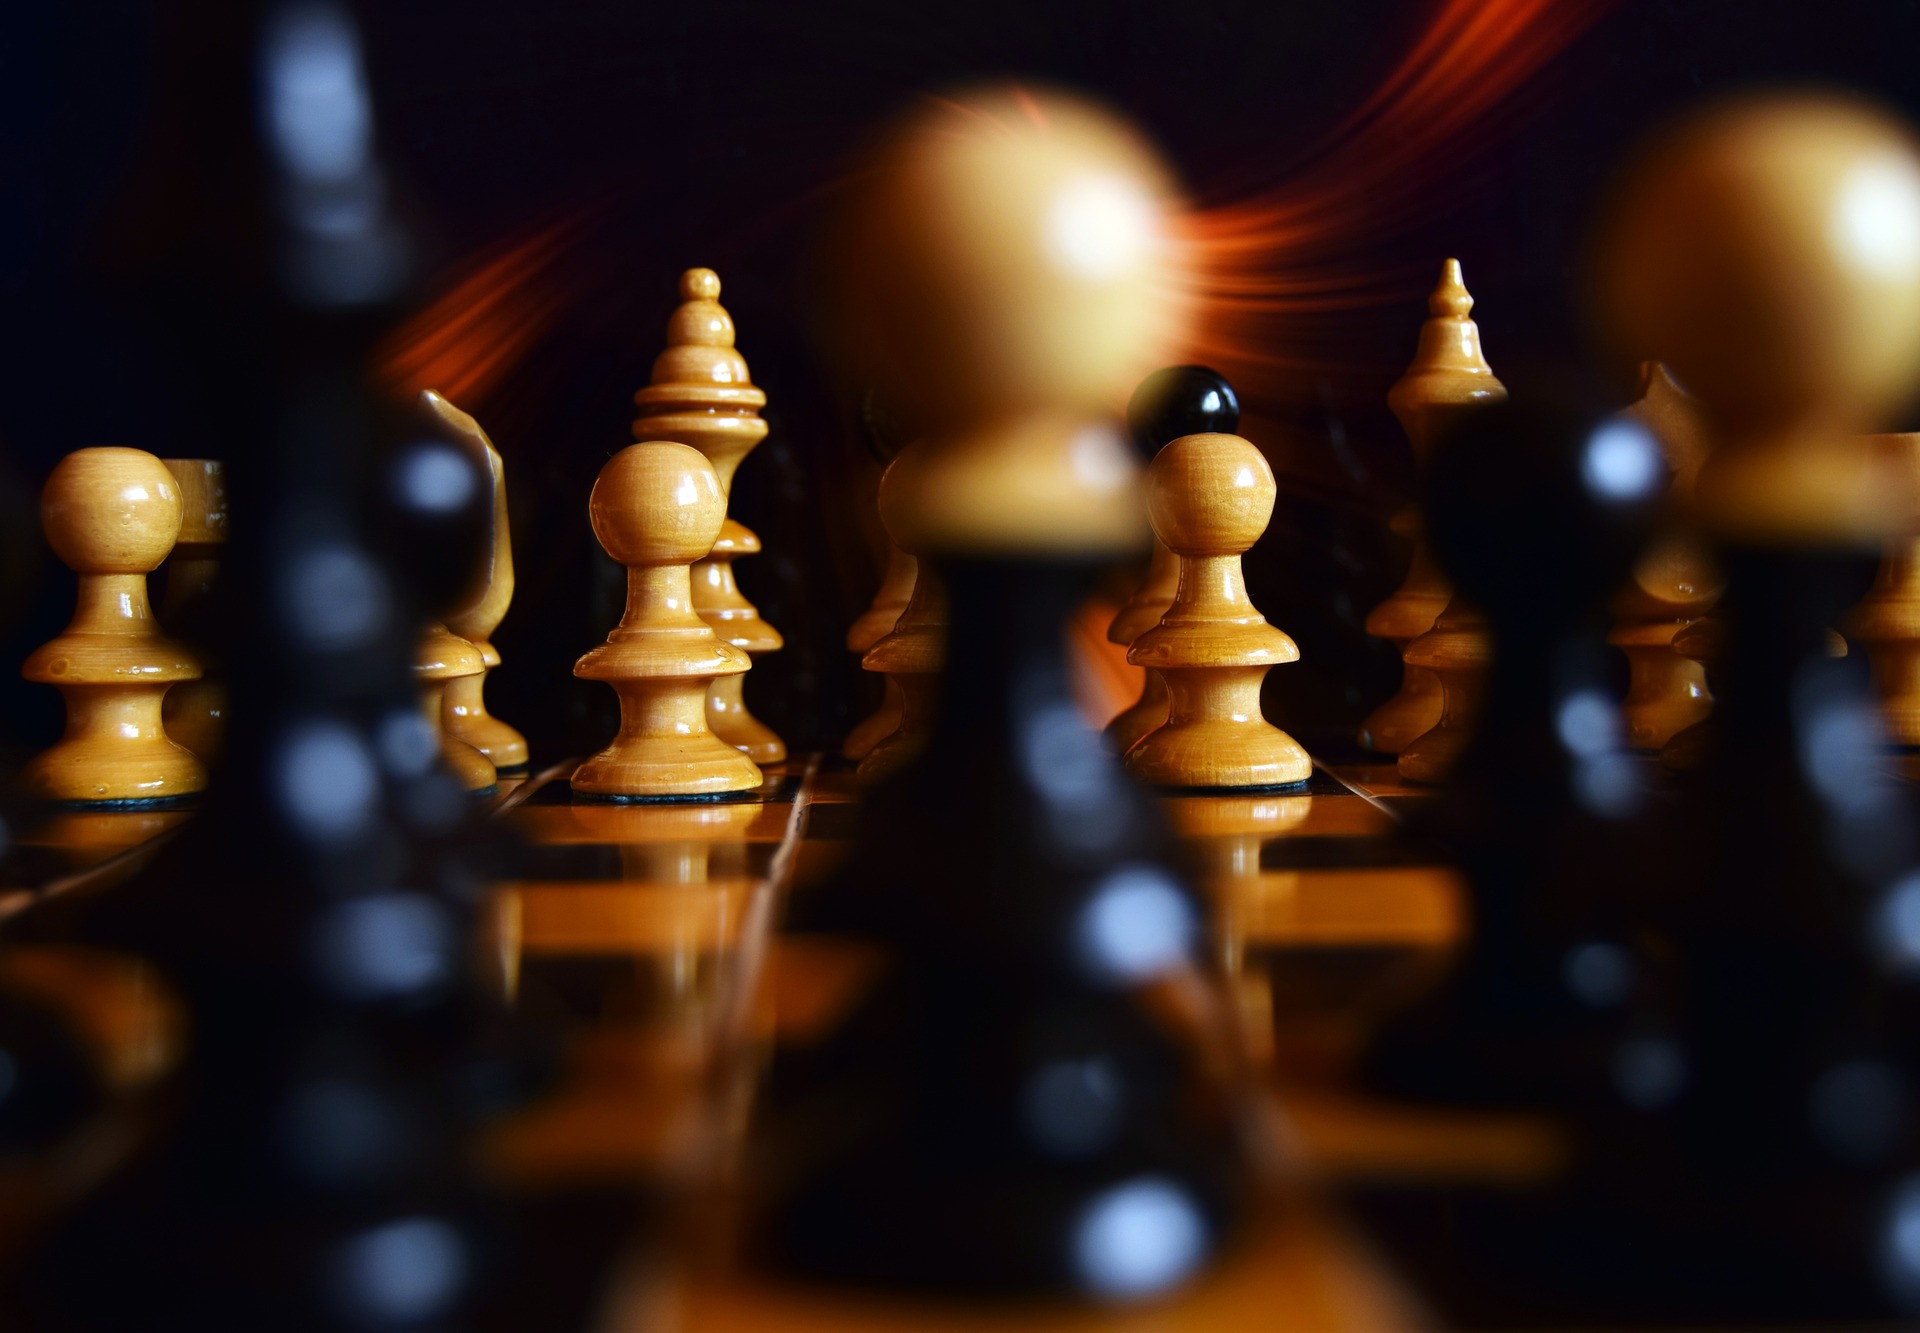 Planen Sie Ihren nächsten Schachzug sorgfältig. Er kann über Sieg oder Niederlage entscheiden.